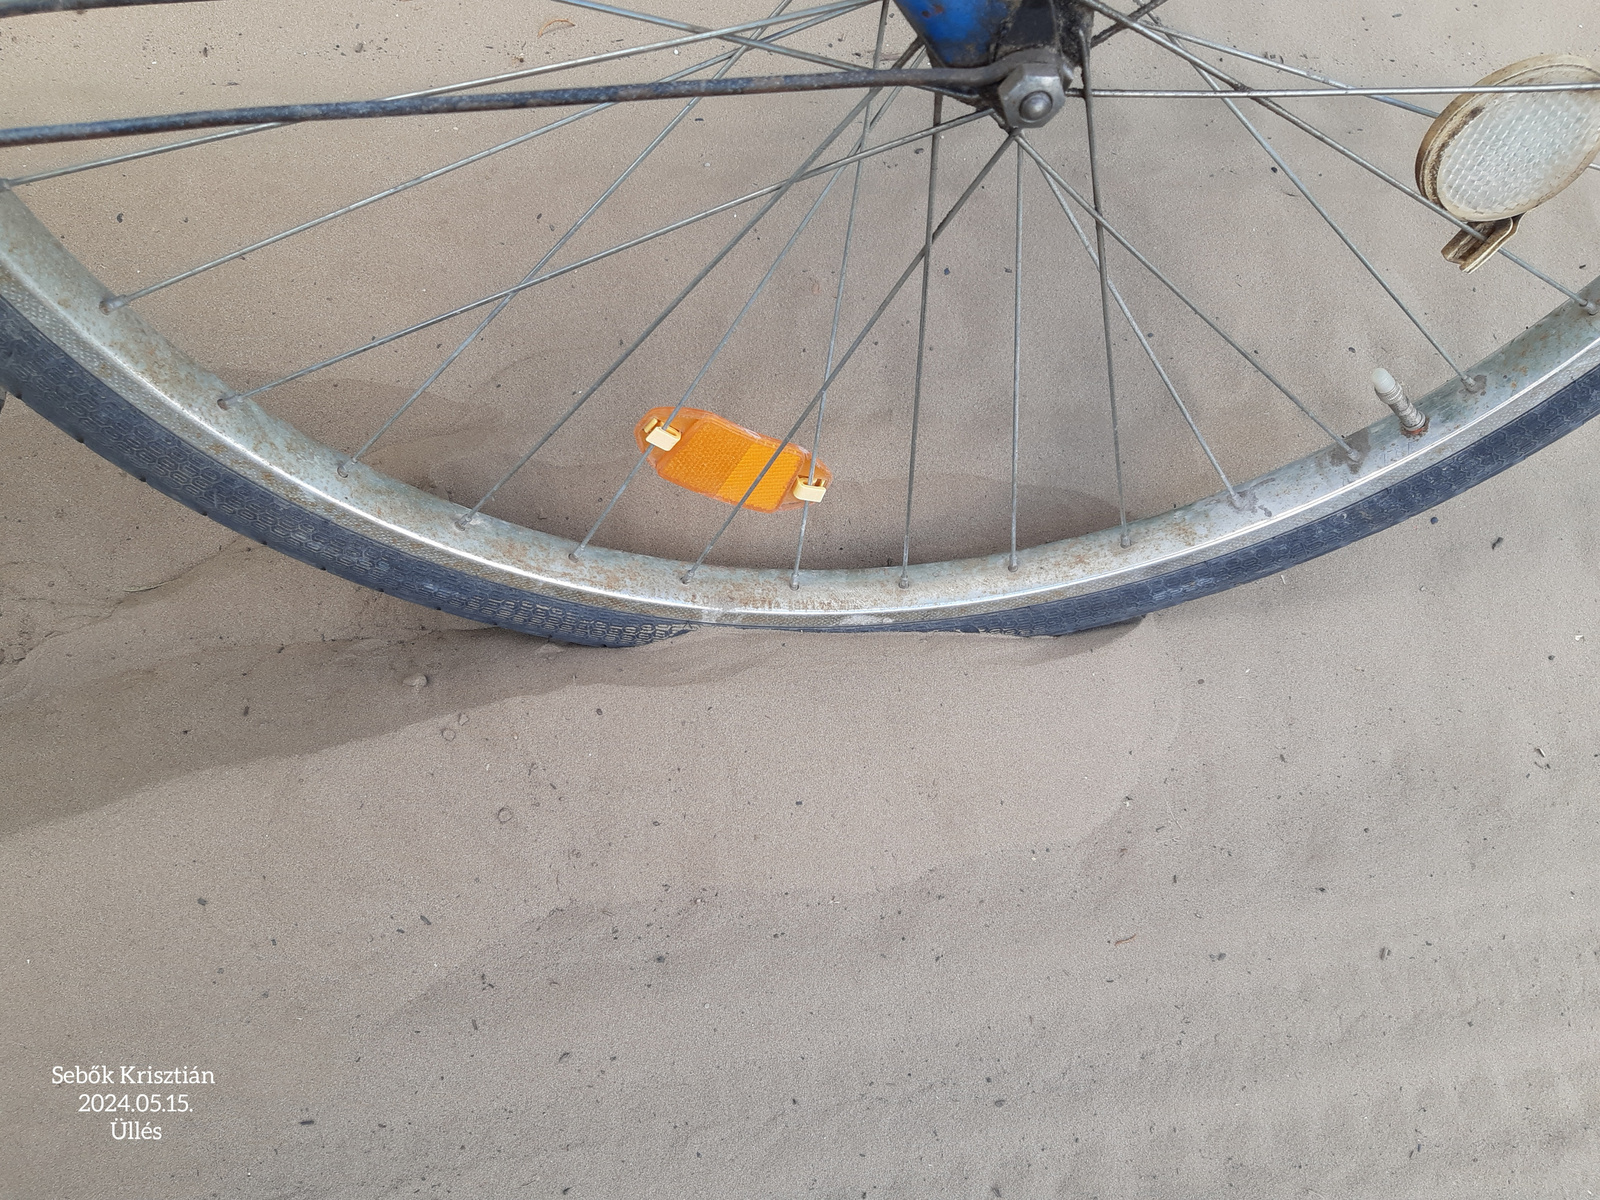 Bicikli a poszaly homokban. Üllés, 2024.05.15.